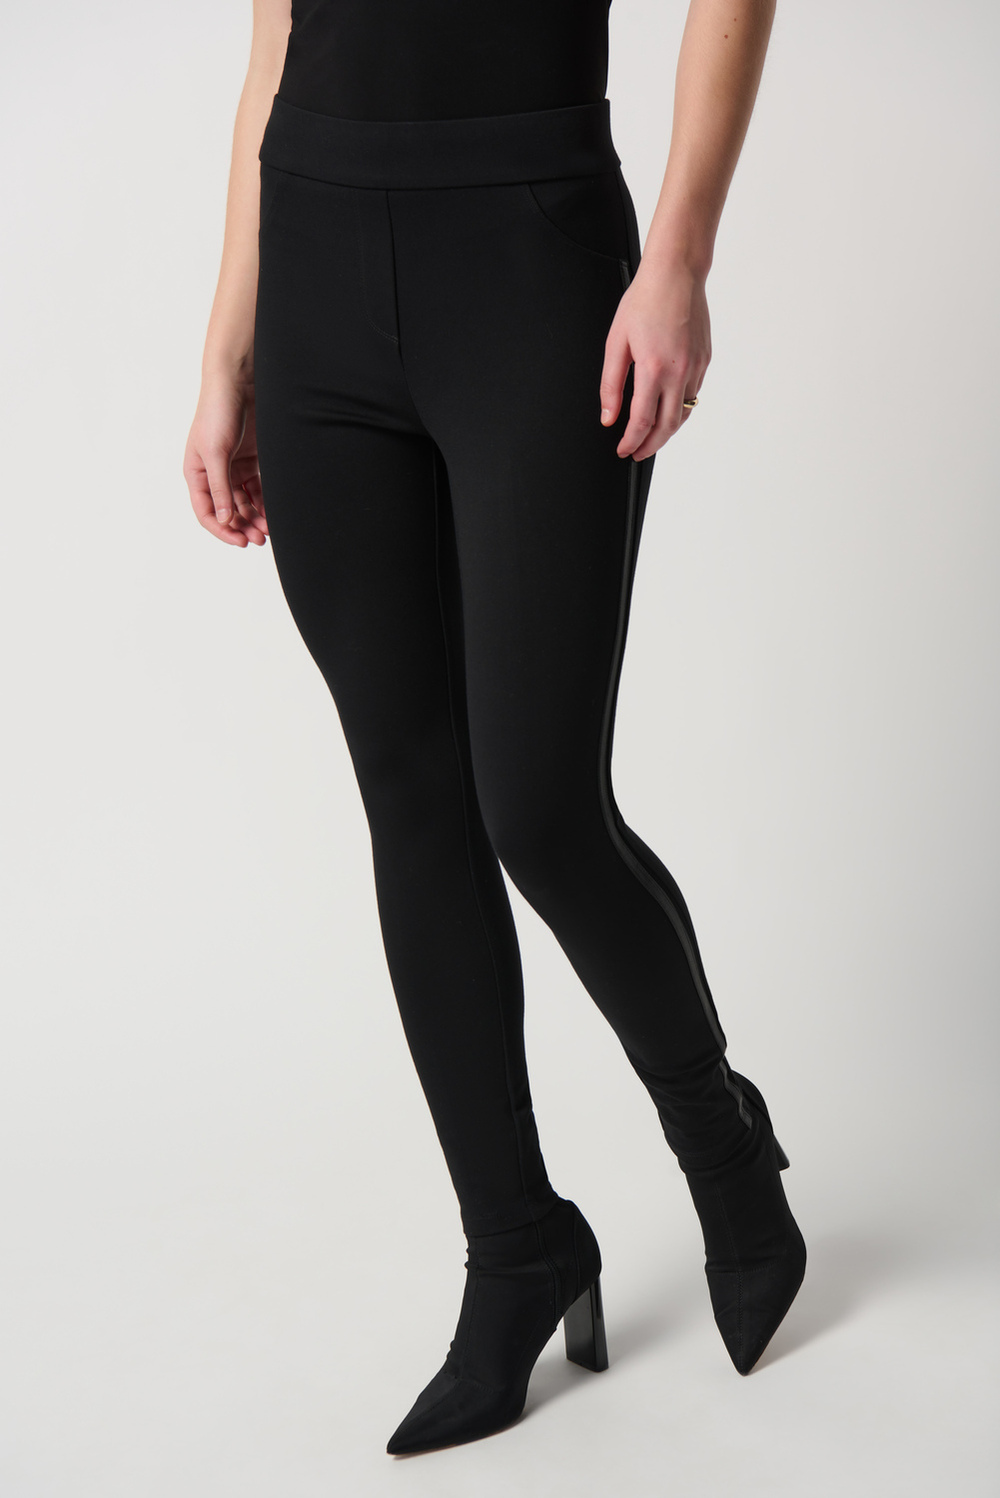 Satin Stripe Pants Style 234236. Black